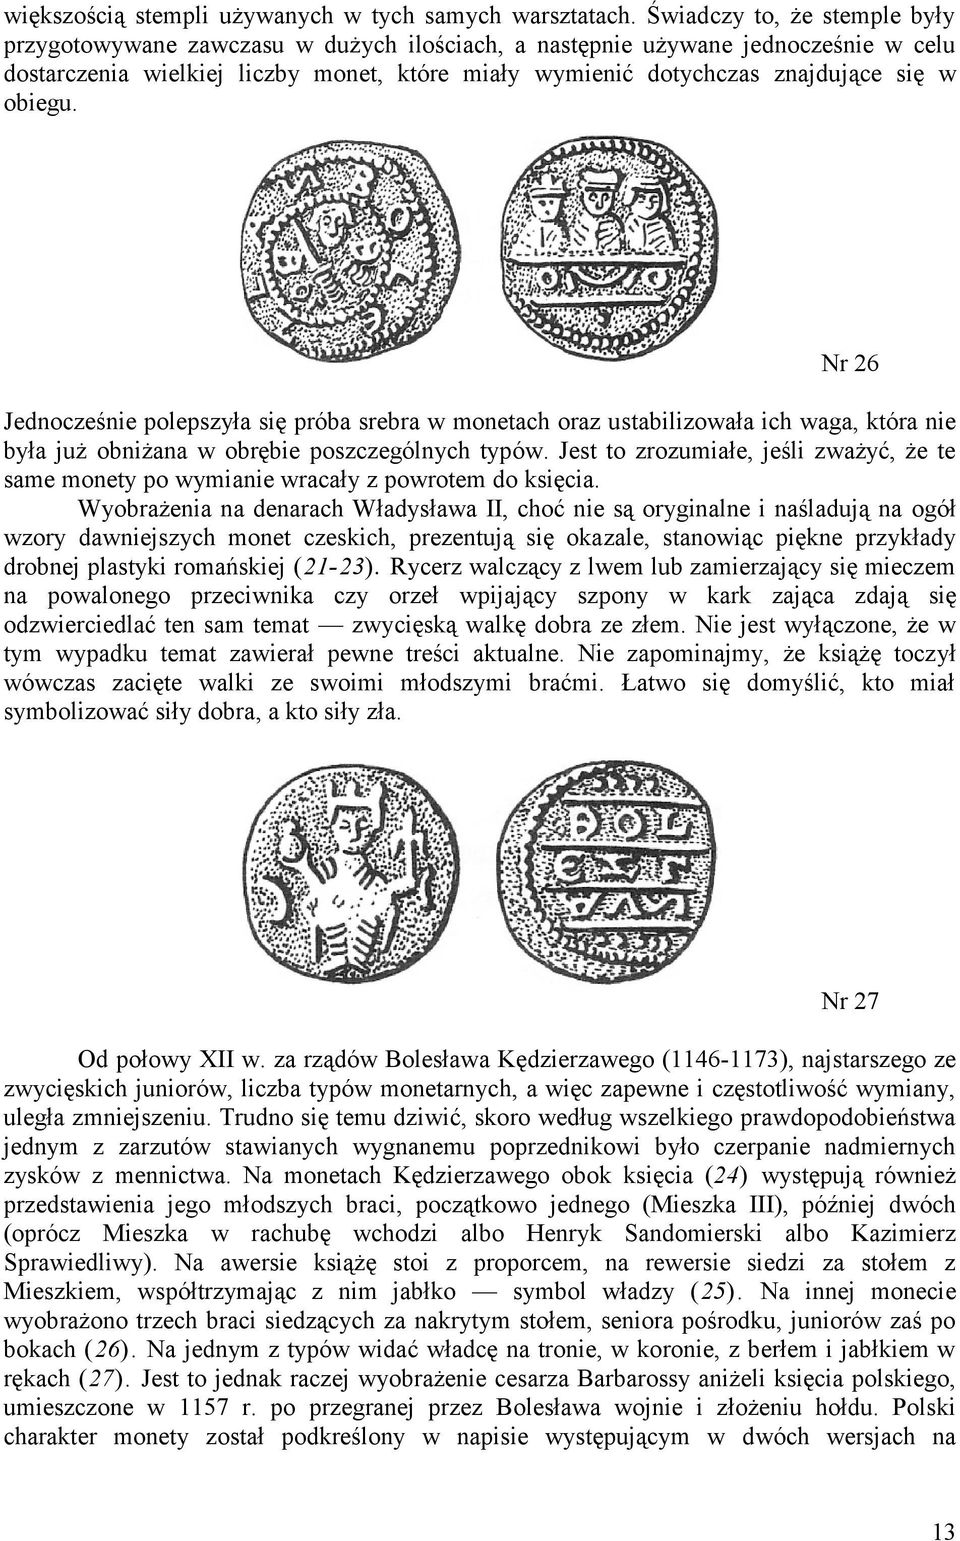 obiegu. Nr 26 Jednocześnie polepszyła się próba srebra w monetach oraz ustabilizowała ich waga, która nie była już obniżana w obrębie poszczególnych typów.